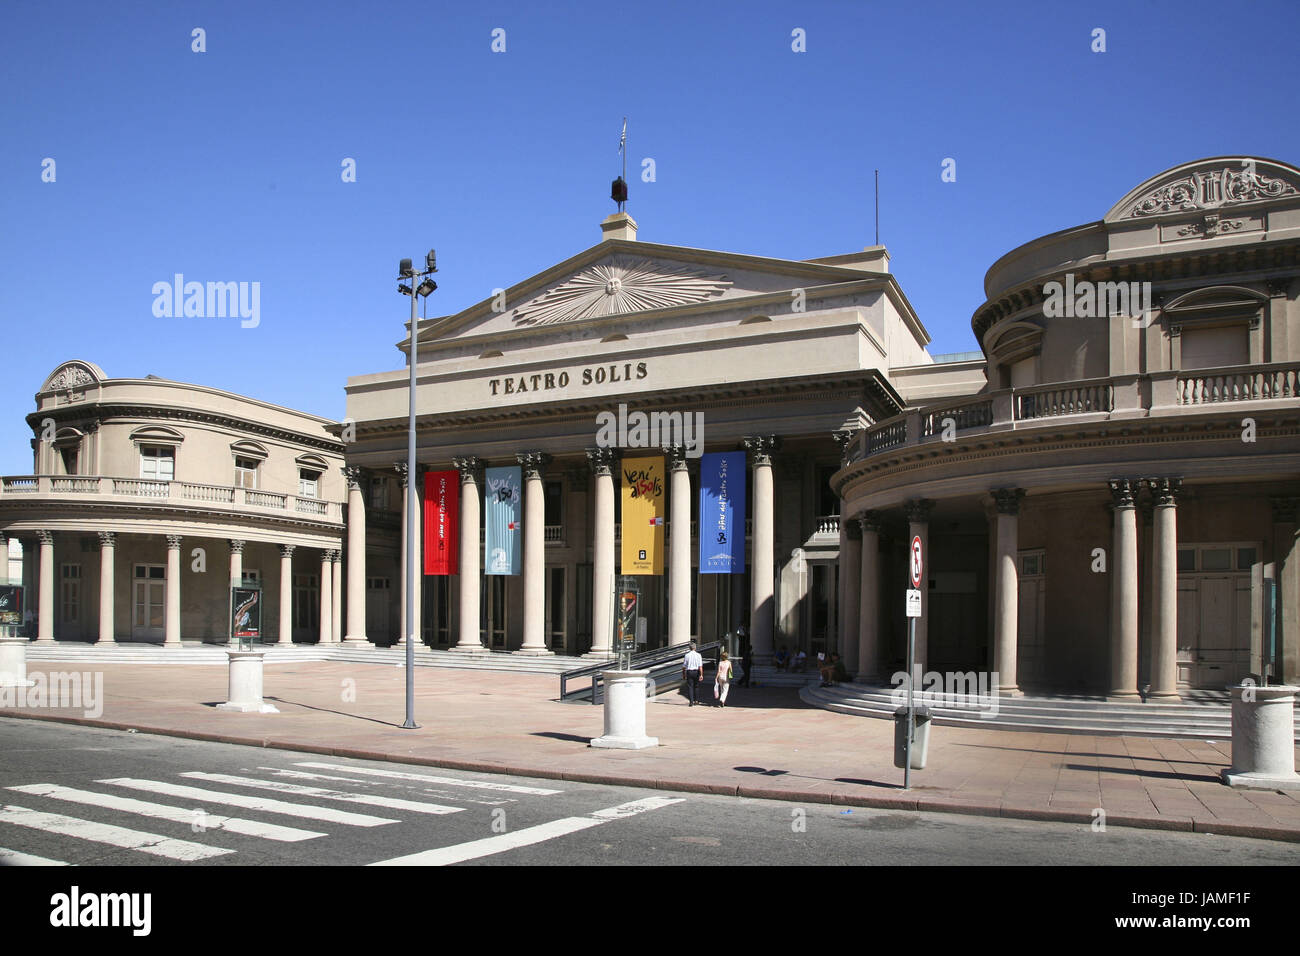 Uruguay,Montevideo,Teatro Solis, Stock Photo